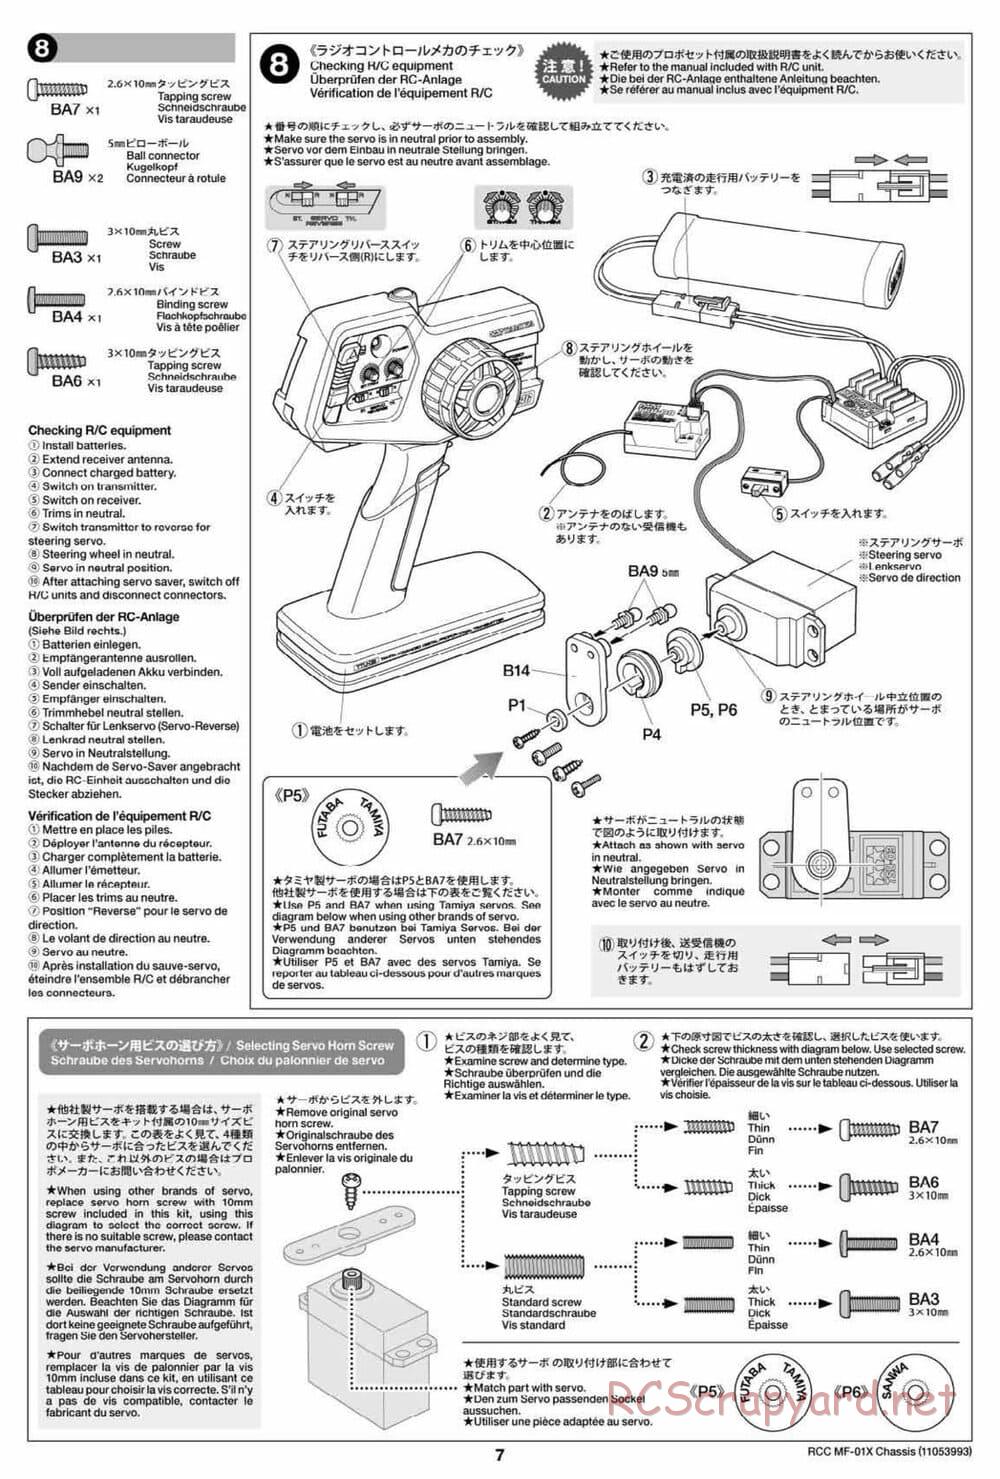 Tamiya - MF-01X Chassis - Manual - Page 7